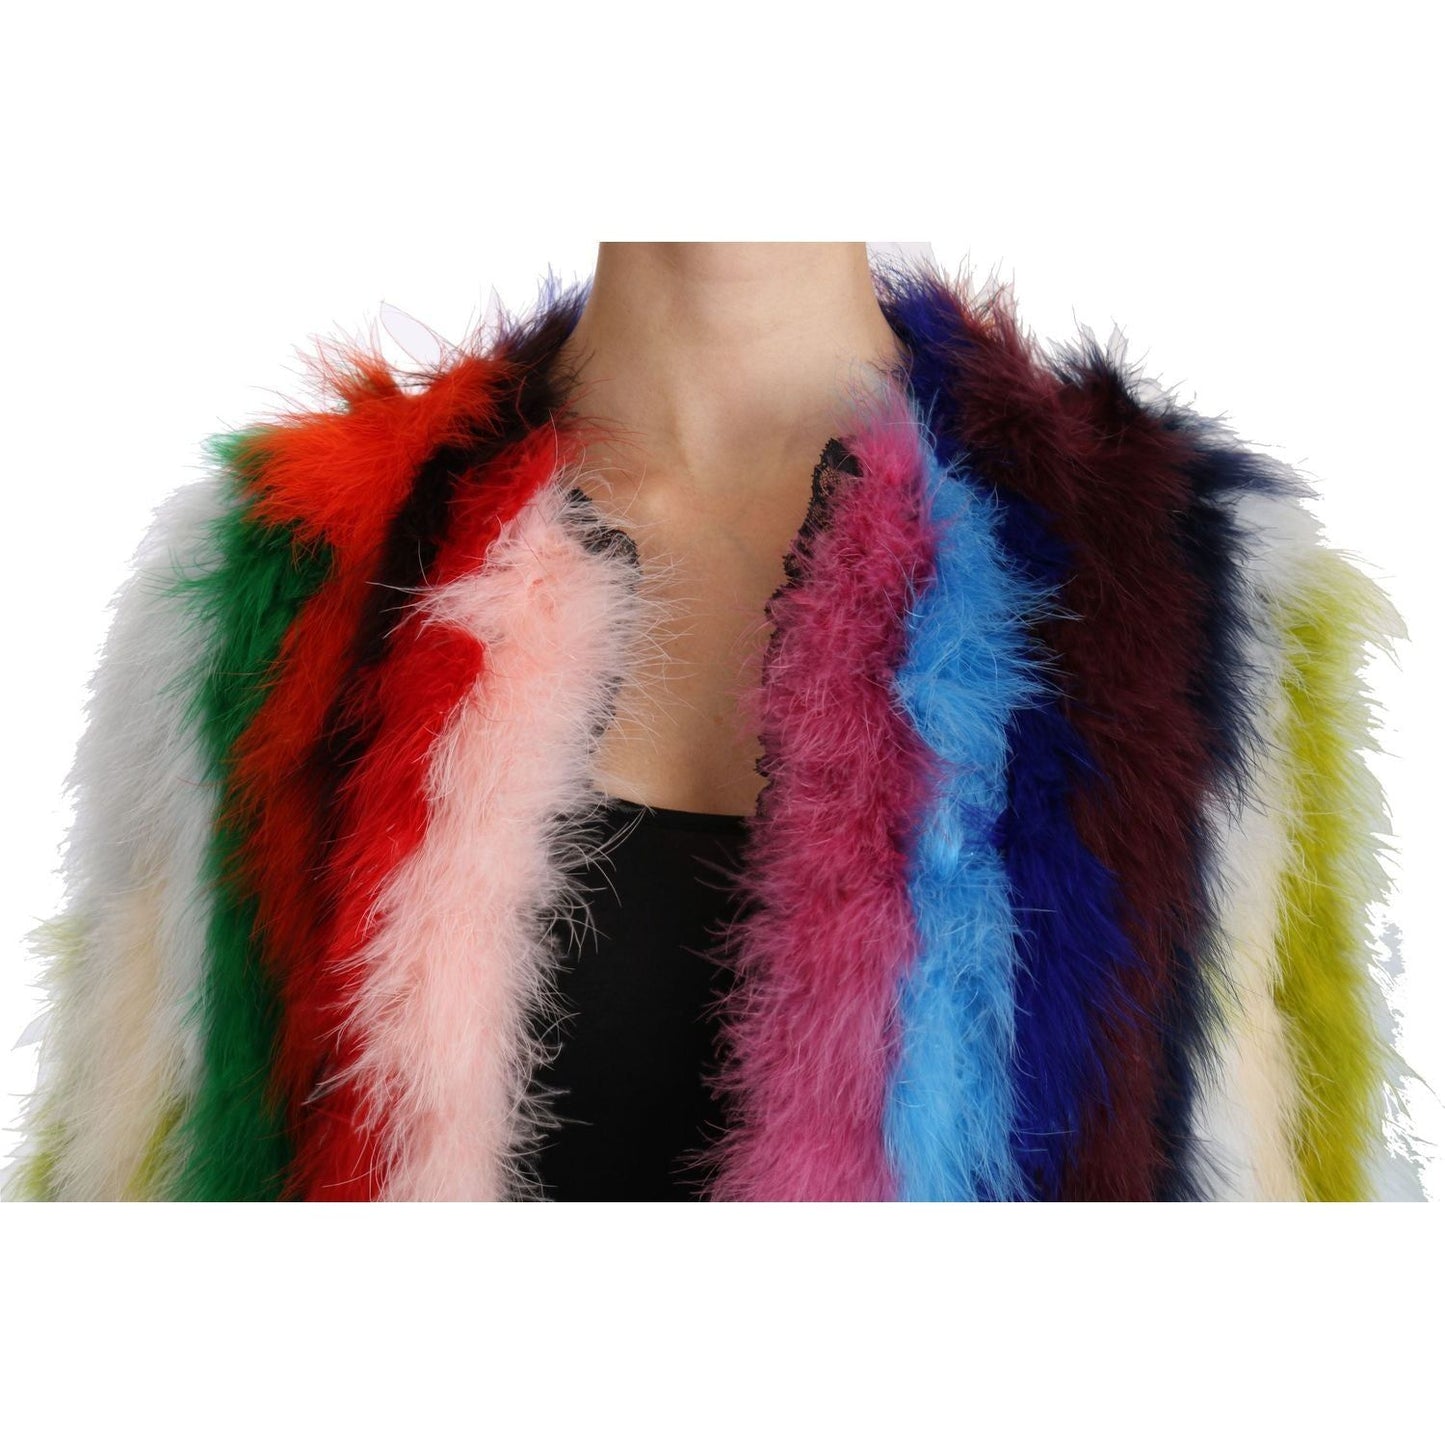 Dolce & GabbanaElegant Multicolor Feather Long Coat JacketMcRichard Designer Brands£2729.00